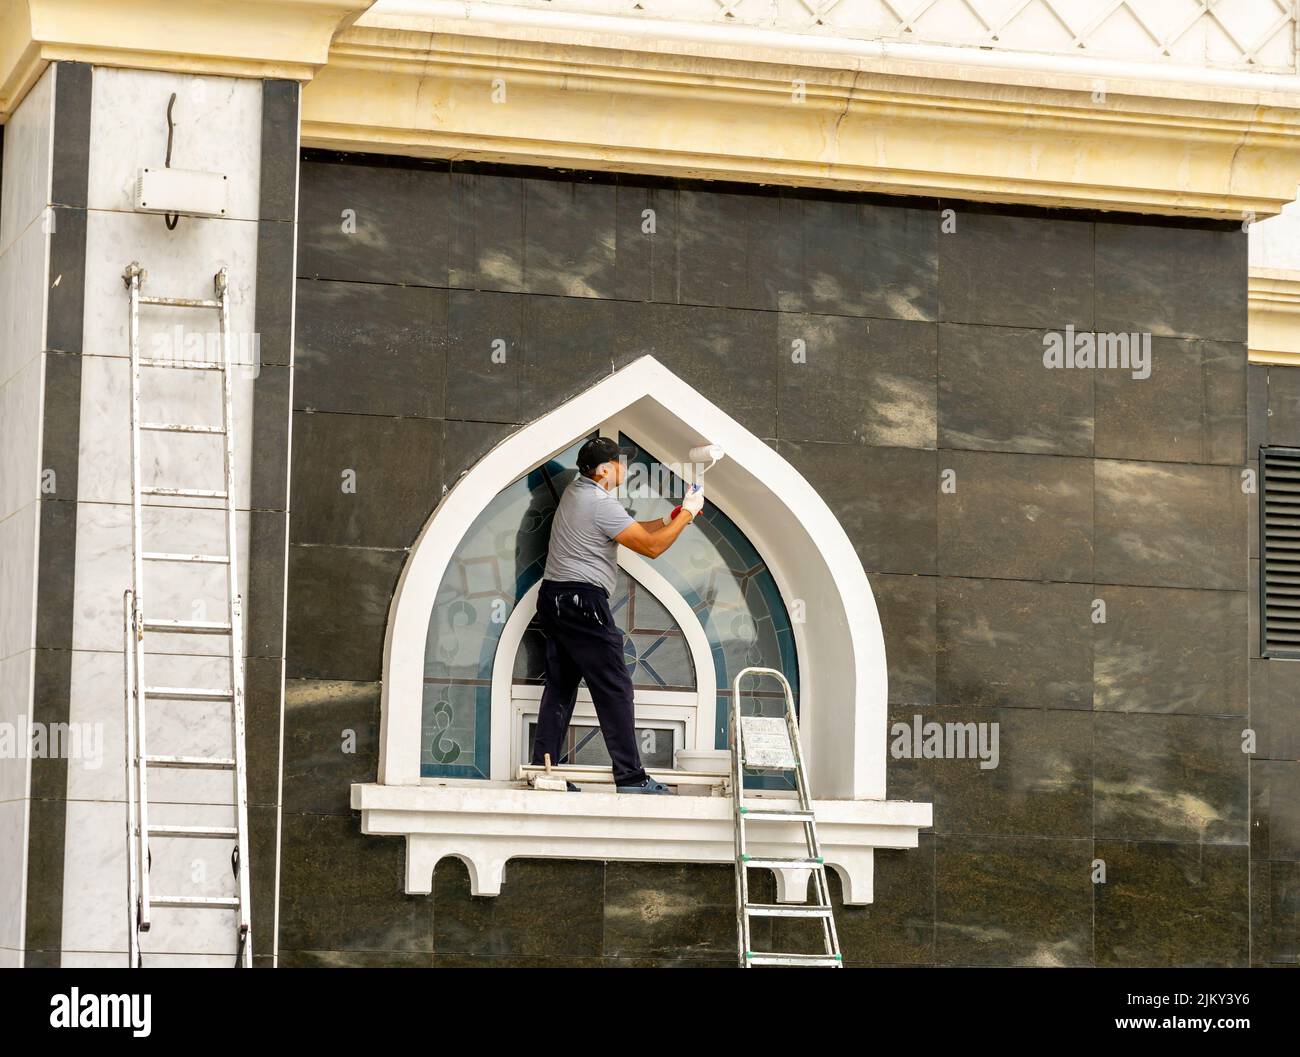 Un peintre peint un bâtiment de conception kazakh traditionnelle. Nur-Sultan, Astana, Kazakhstan Banque D'Images